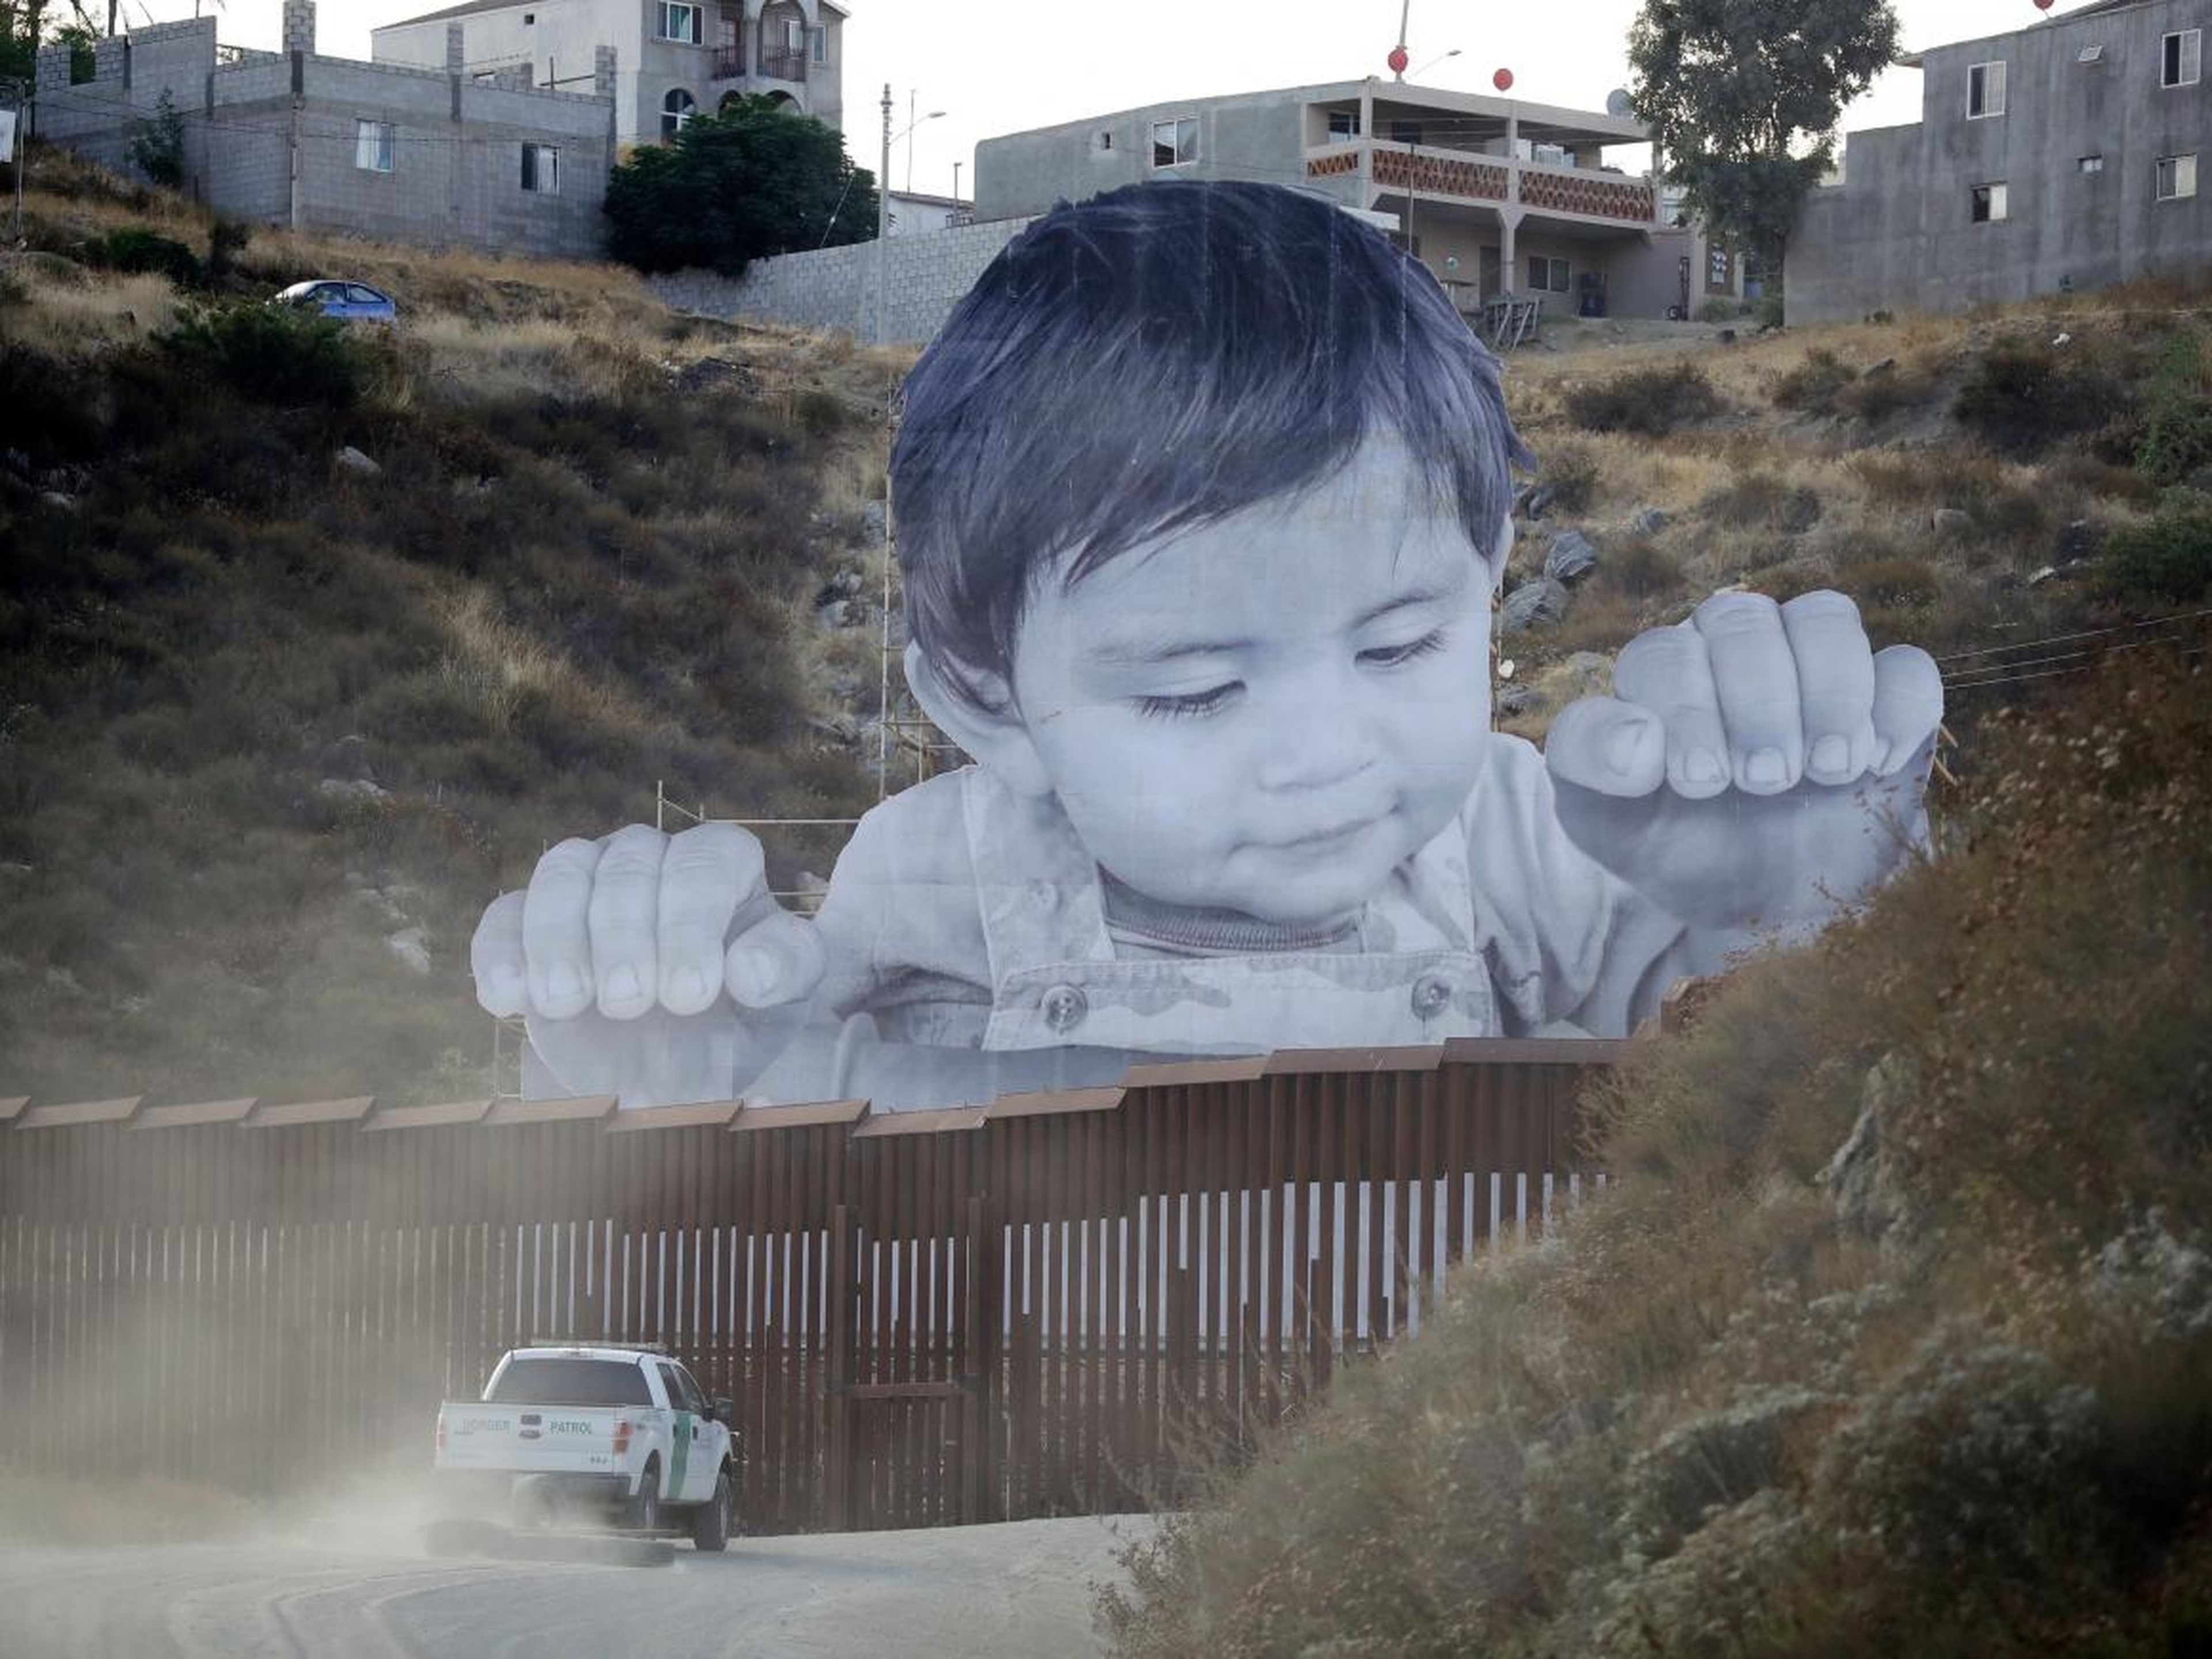 Un vehículo de la Patrulla Fronteriza conduce frente al mural de JR en Tecate, México, cerca de Tecate, California, en 2017.